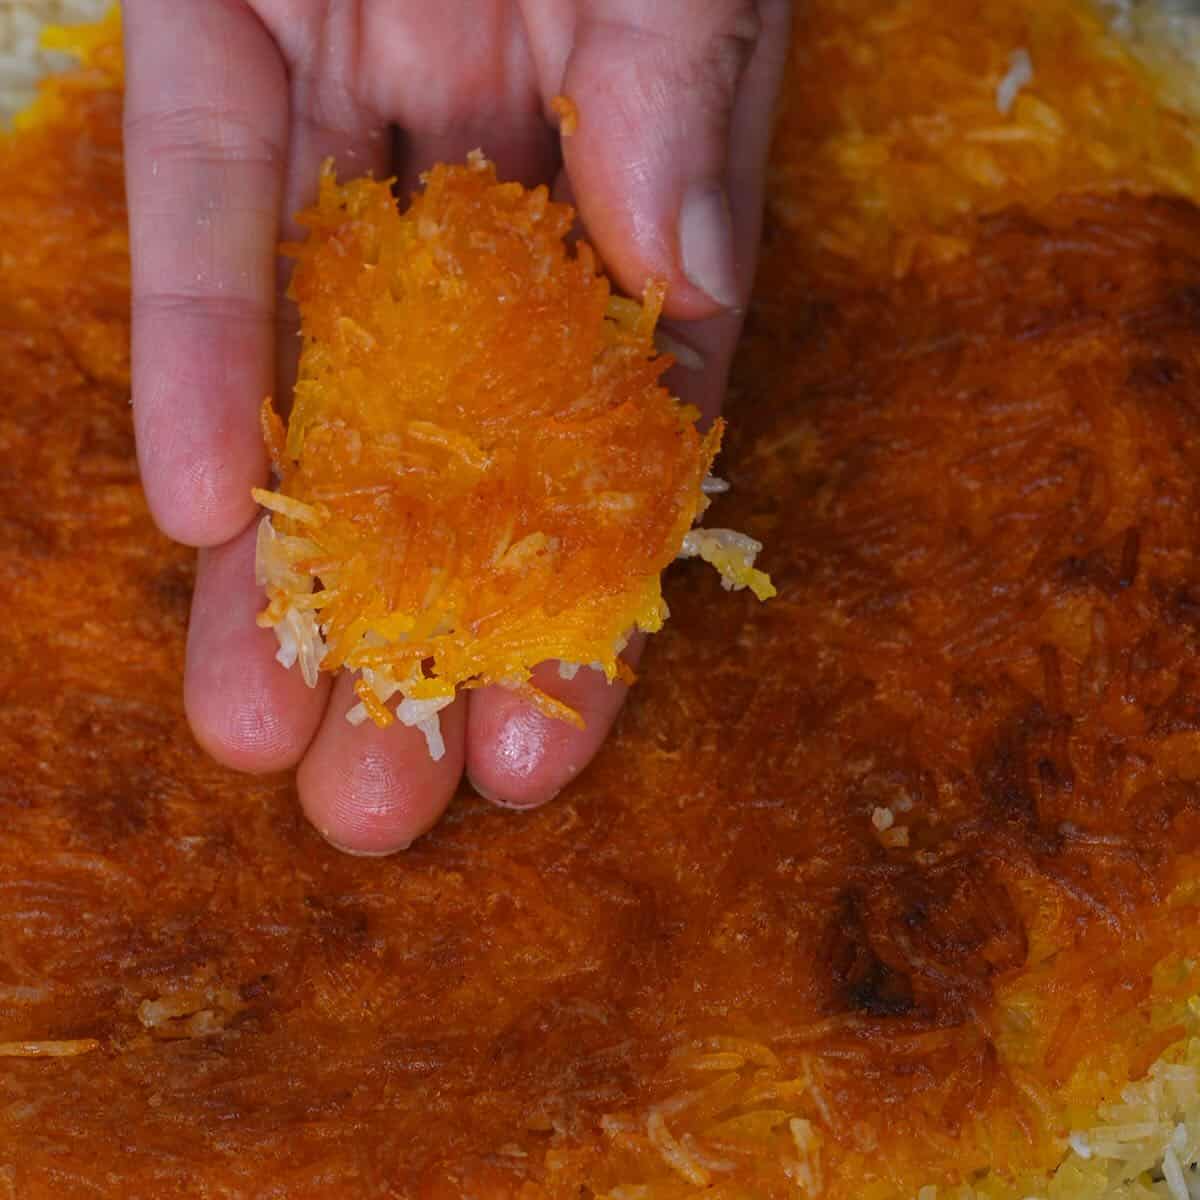 Tahdig (Persian Crunchy Rice) Recipe